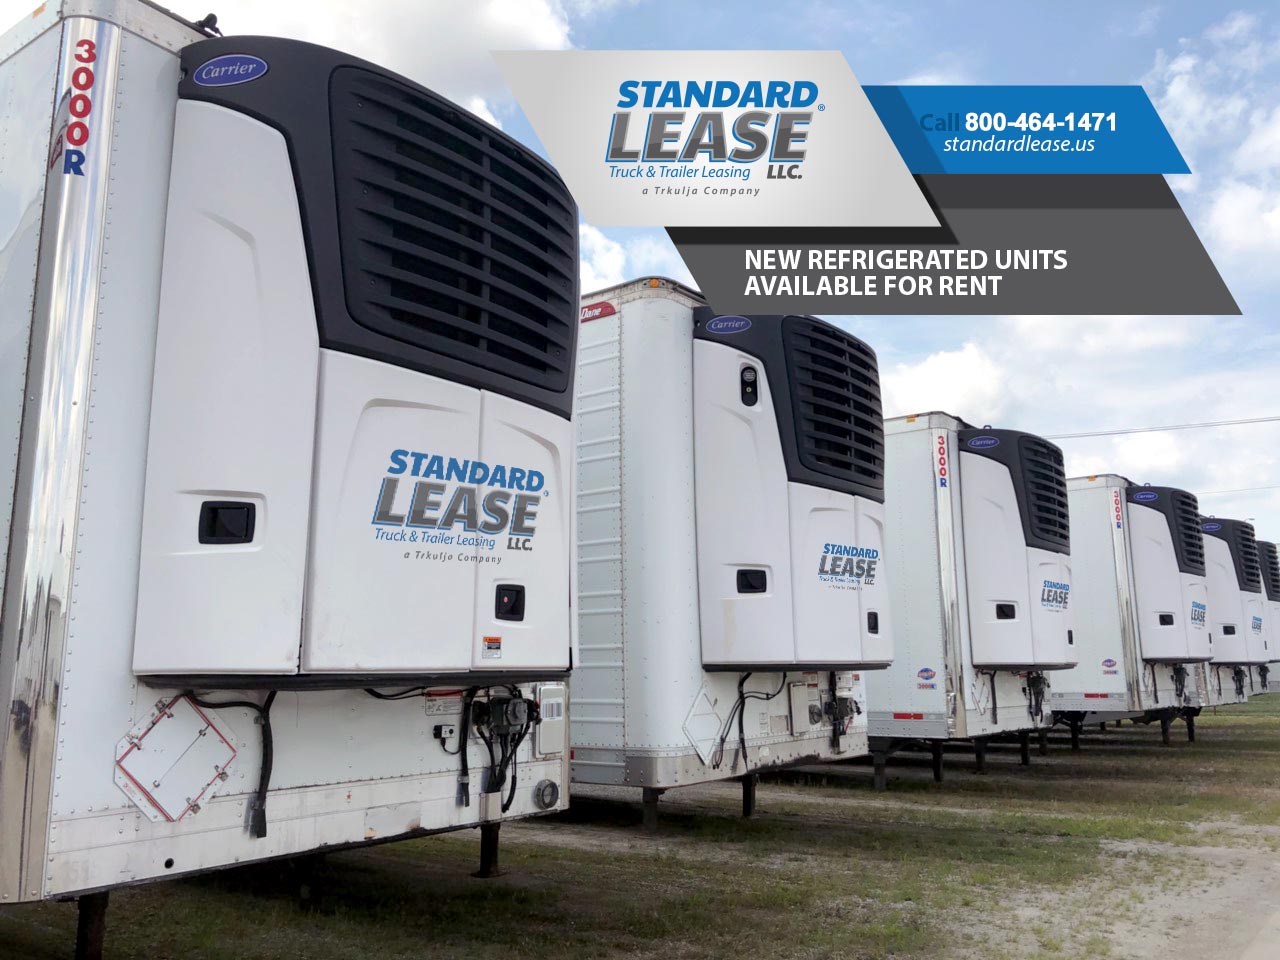 Standard Lease Truck & Trailer Lease